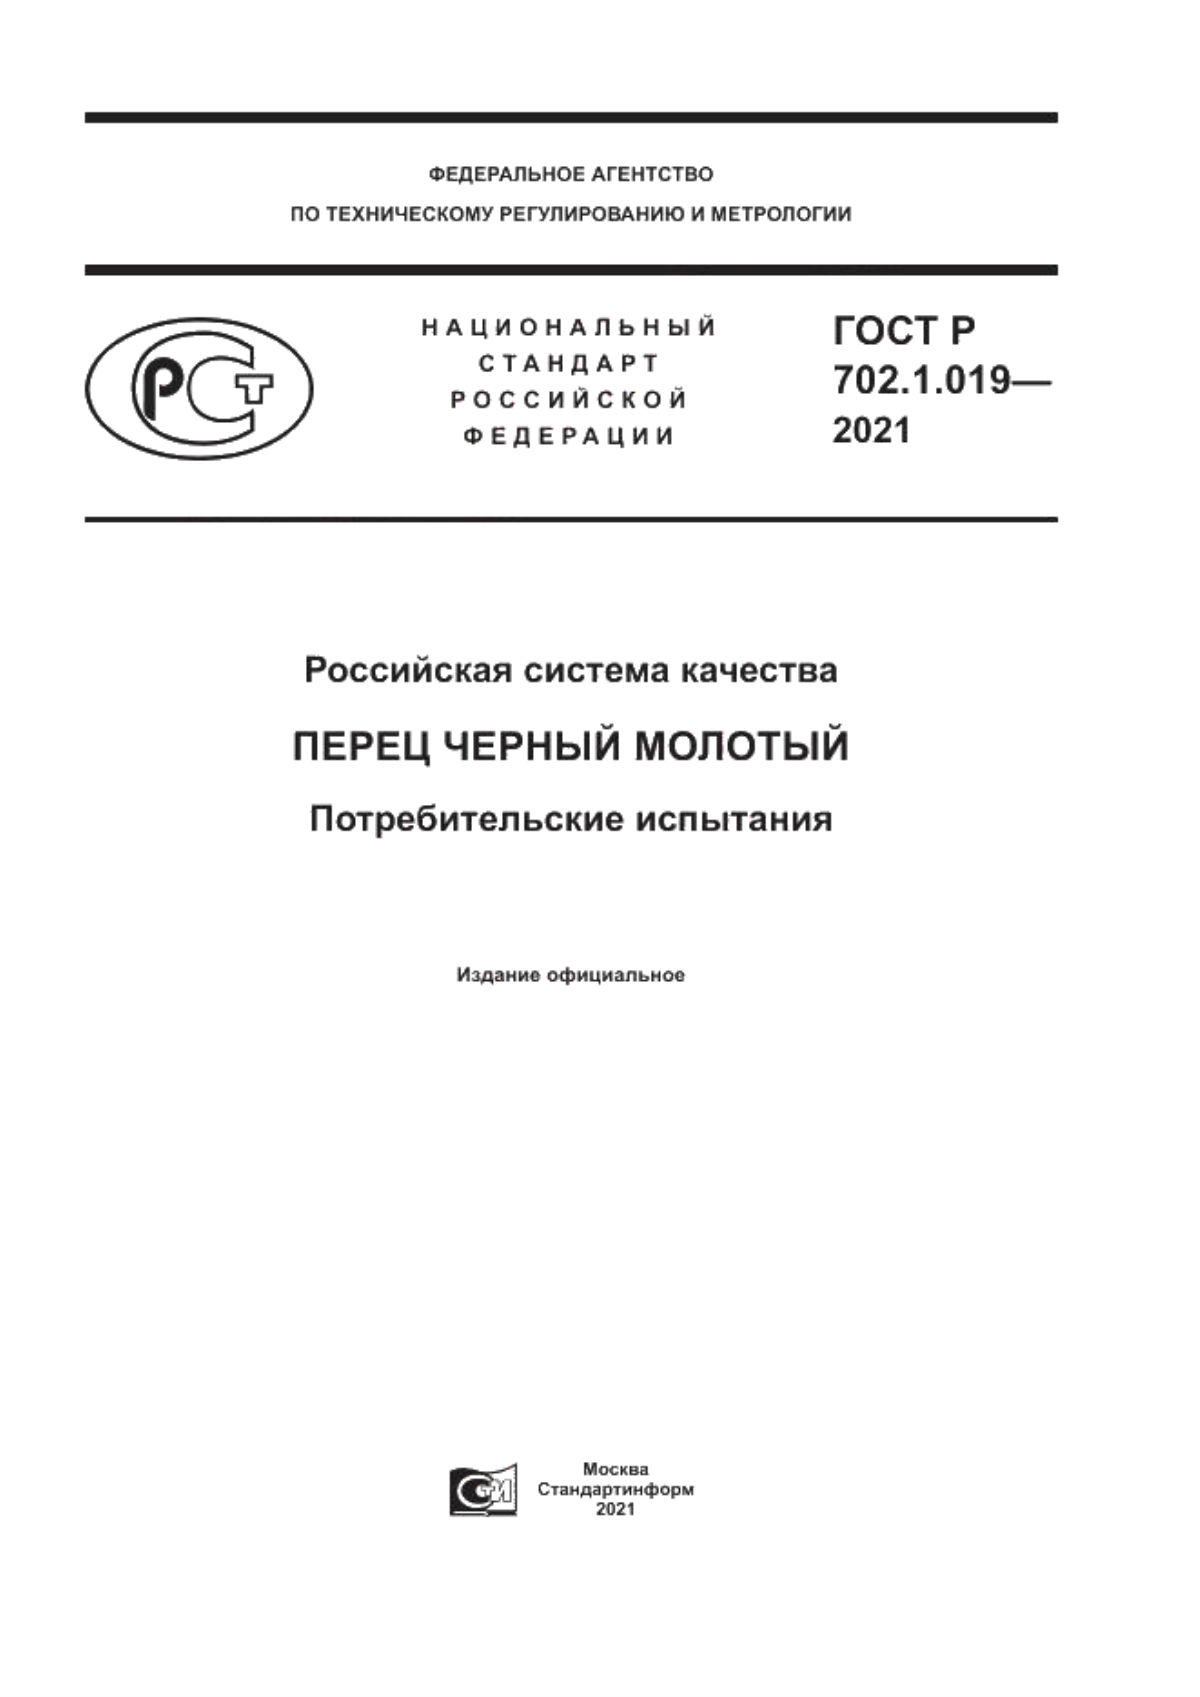 ГОСТ Р 702.1.019-2021 Российская система качества. Перец черный молотый. Потребительские испытания